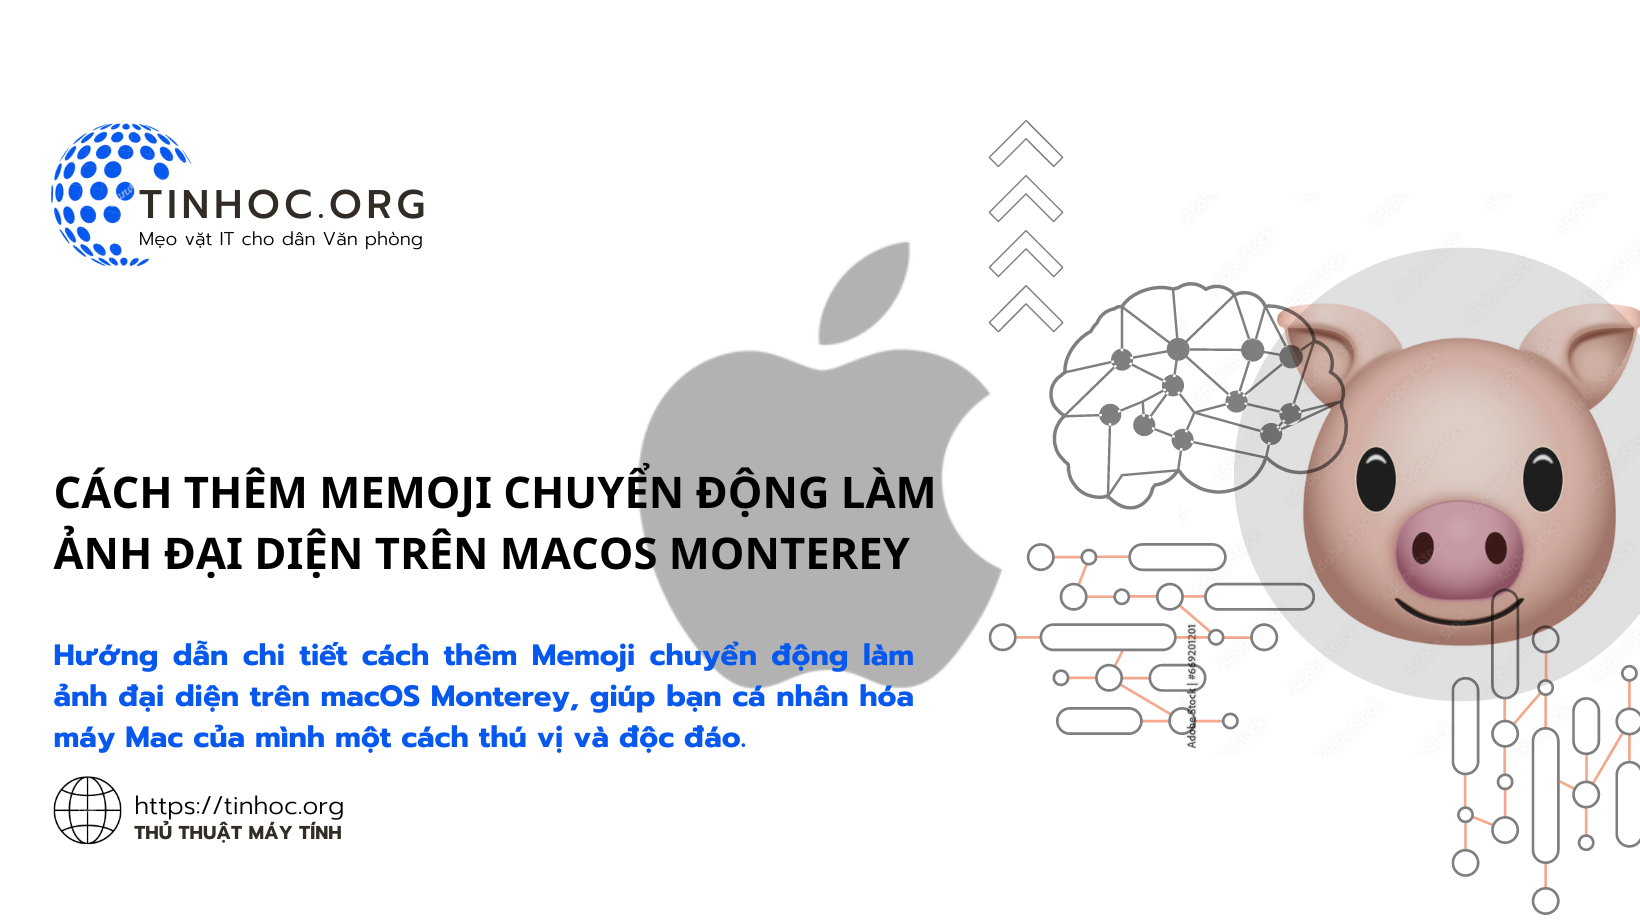 Hướng dẫn chi tiết cách thêm Memoji chuyển động làm ảnh đại diện trên macOS Monterey, giúp bạn cá nhân hóa máy Mac của mình một cách thú vị và độc đáo.